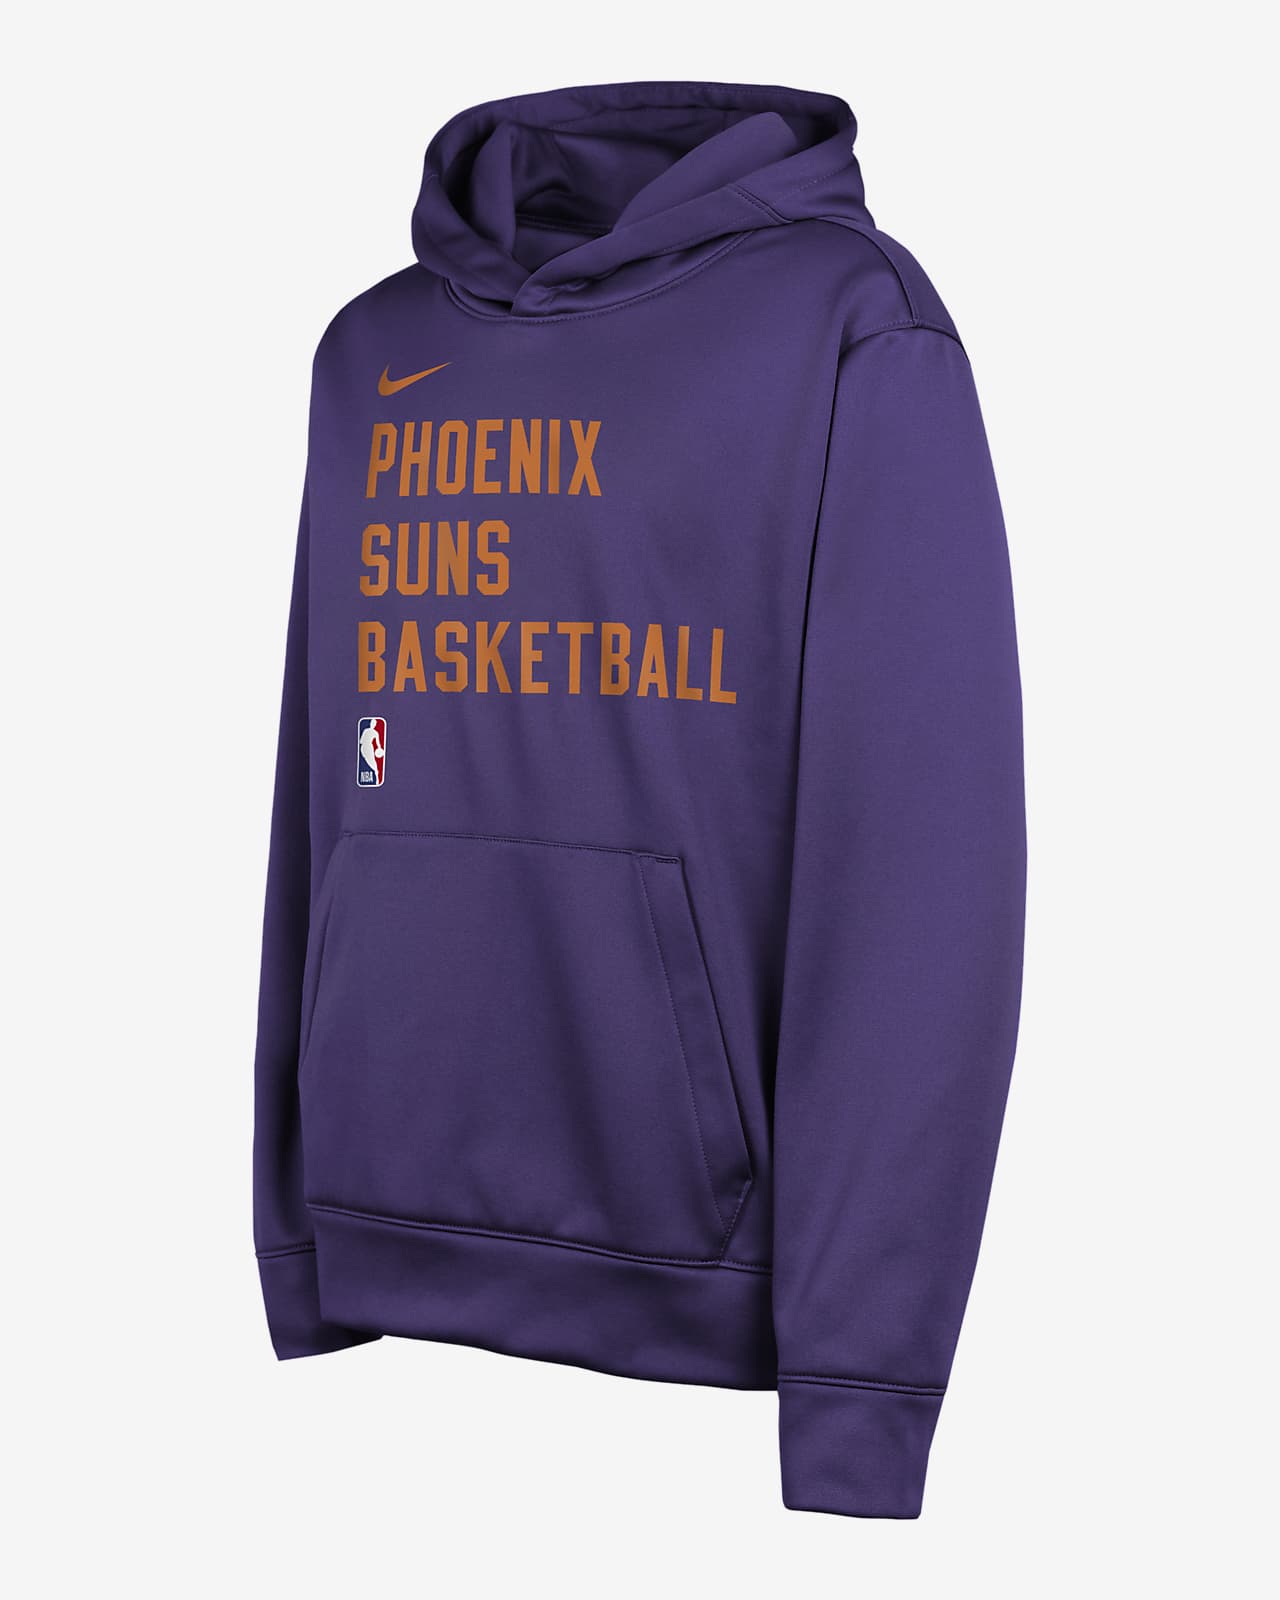 Sudadera con gorro sin cierre Nike Dri-FIT de la NBA para niños talla grande Phoenix Suns